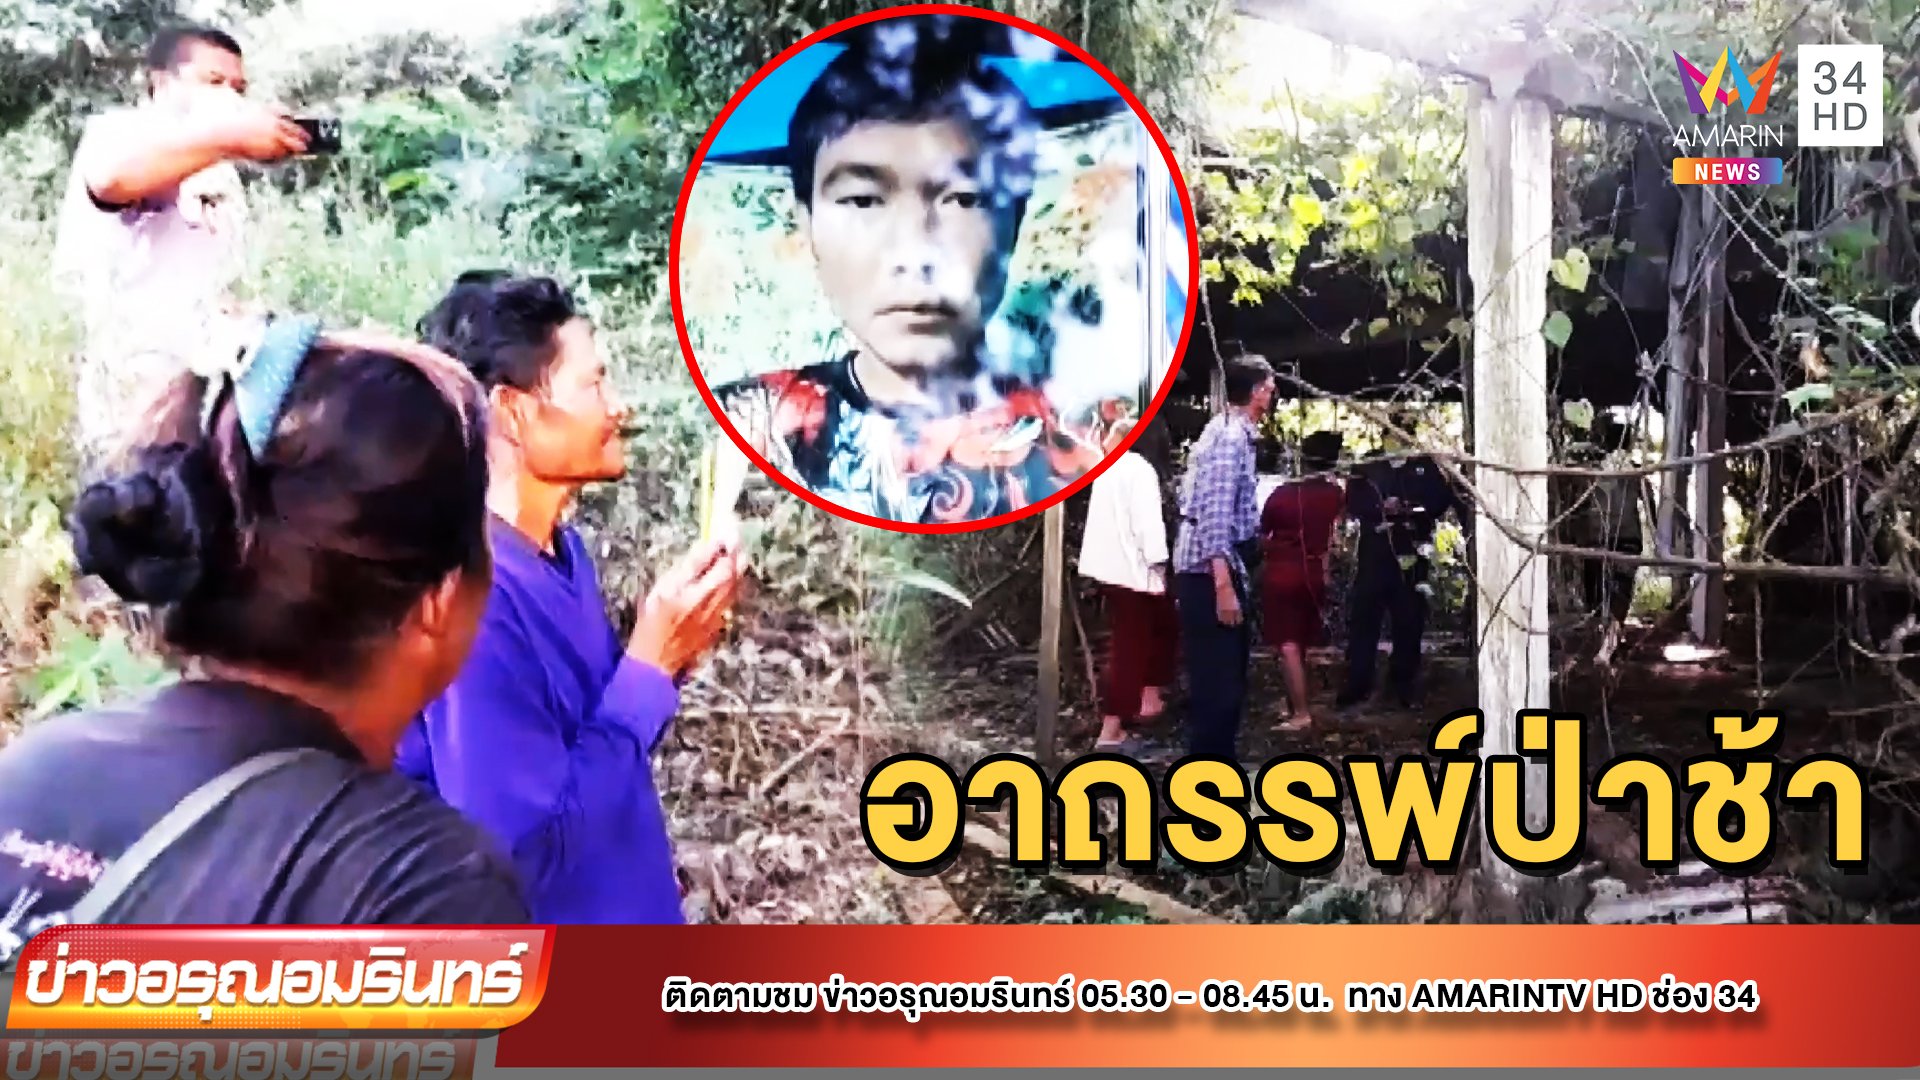 หนุ่มเข้าปลดทุกข์ในป่าช้า หายตัวปริศนา | ข่าวอรุณอมรินทร์ | 21 ต.ค. 65 | AMARIN TVHD34